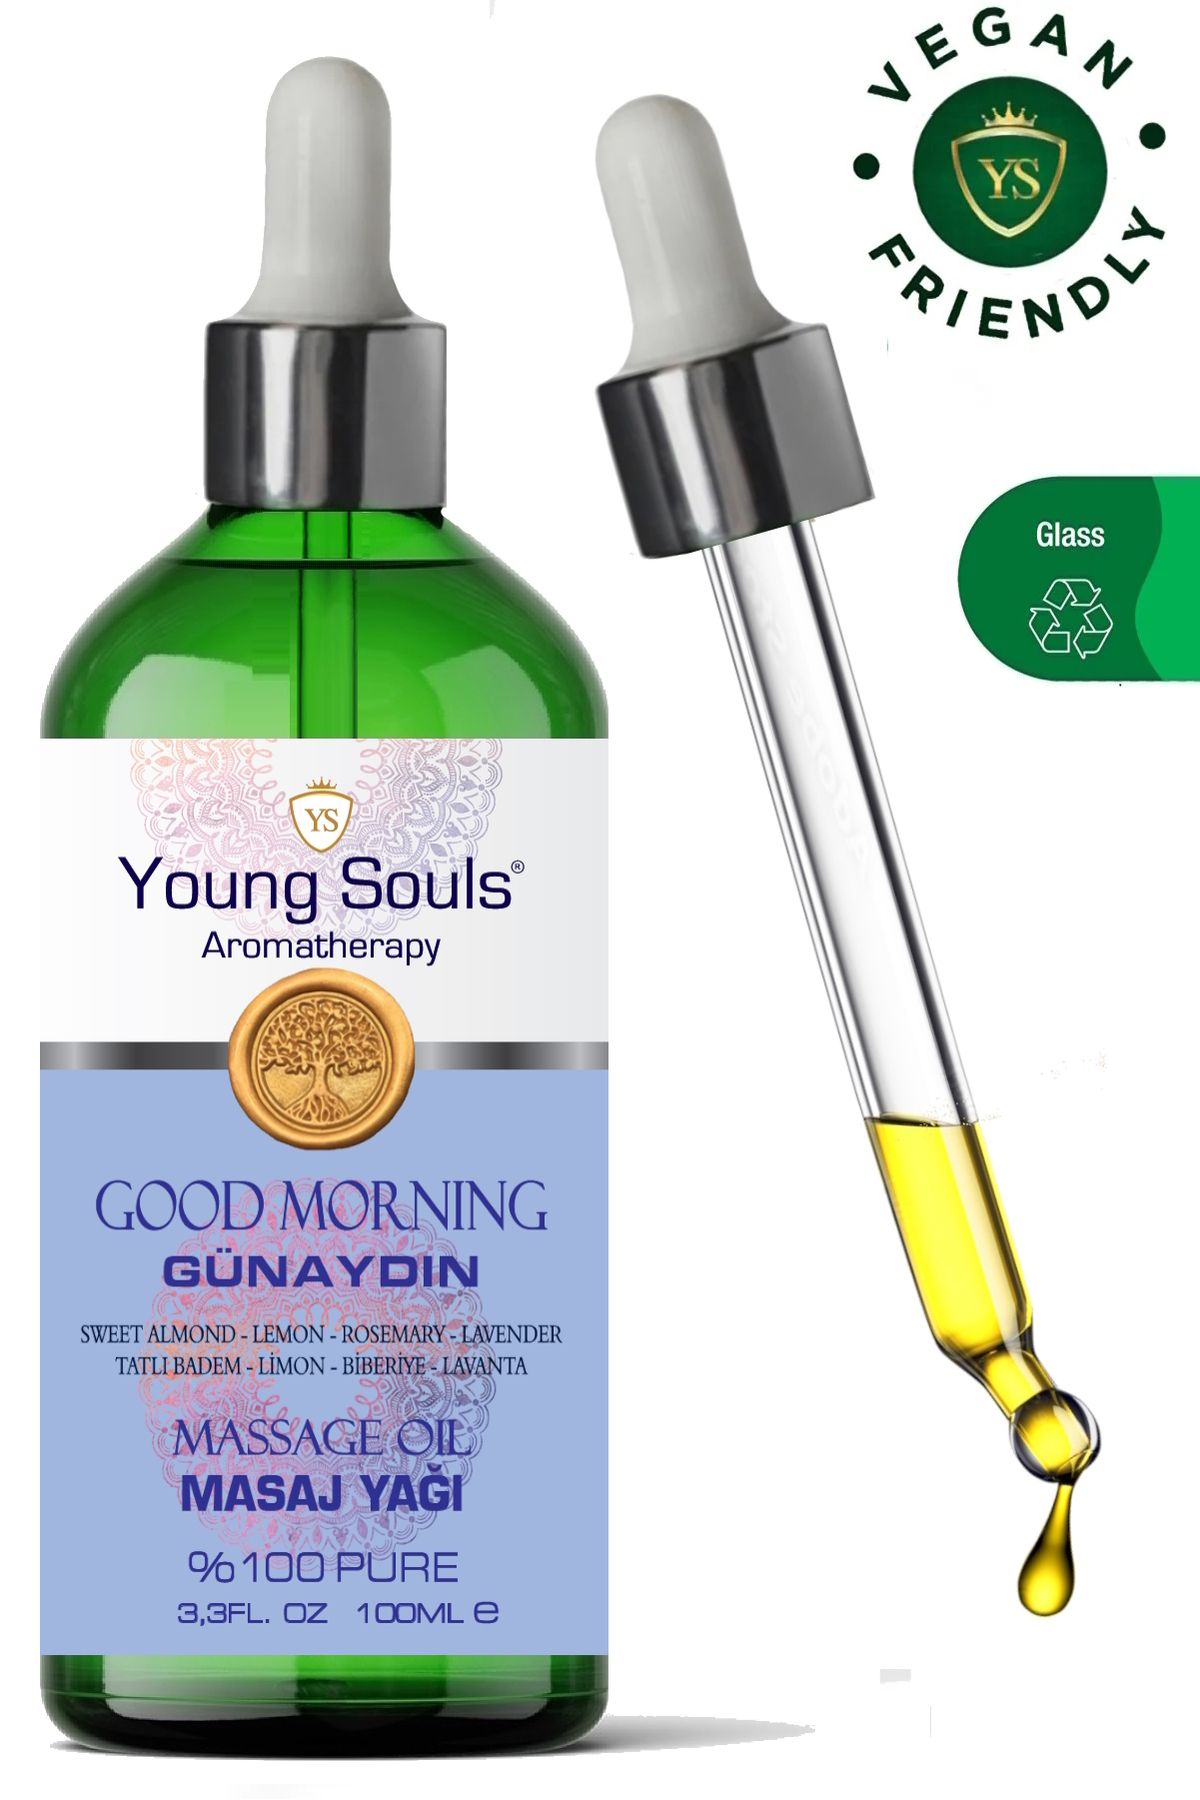 YOUNG SOULS Aromatherapy Good Morning Massage Oil Günaydın Masaj Yağı 100 Ml